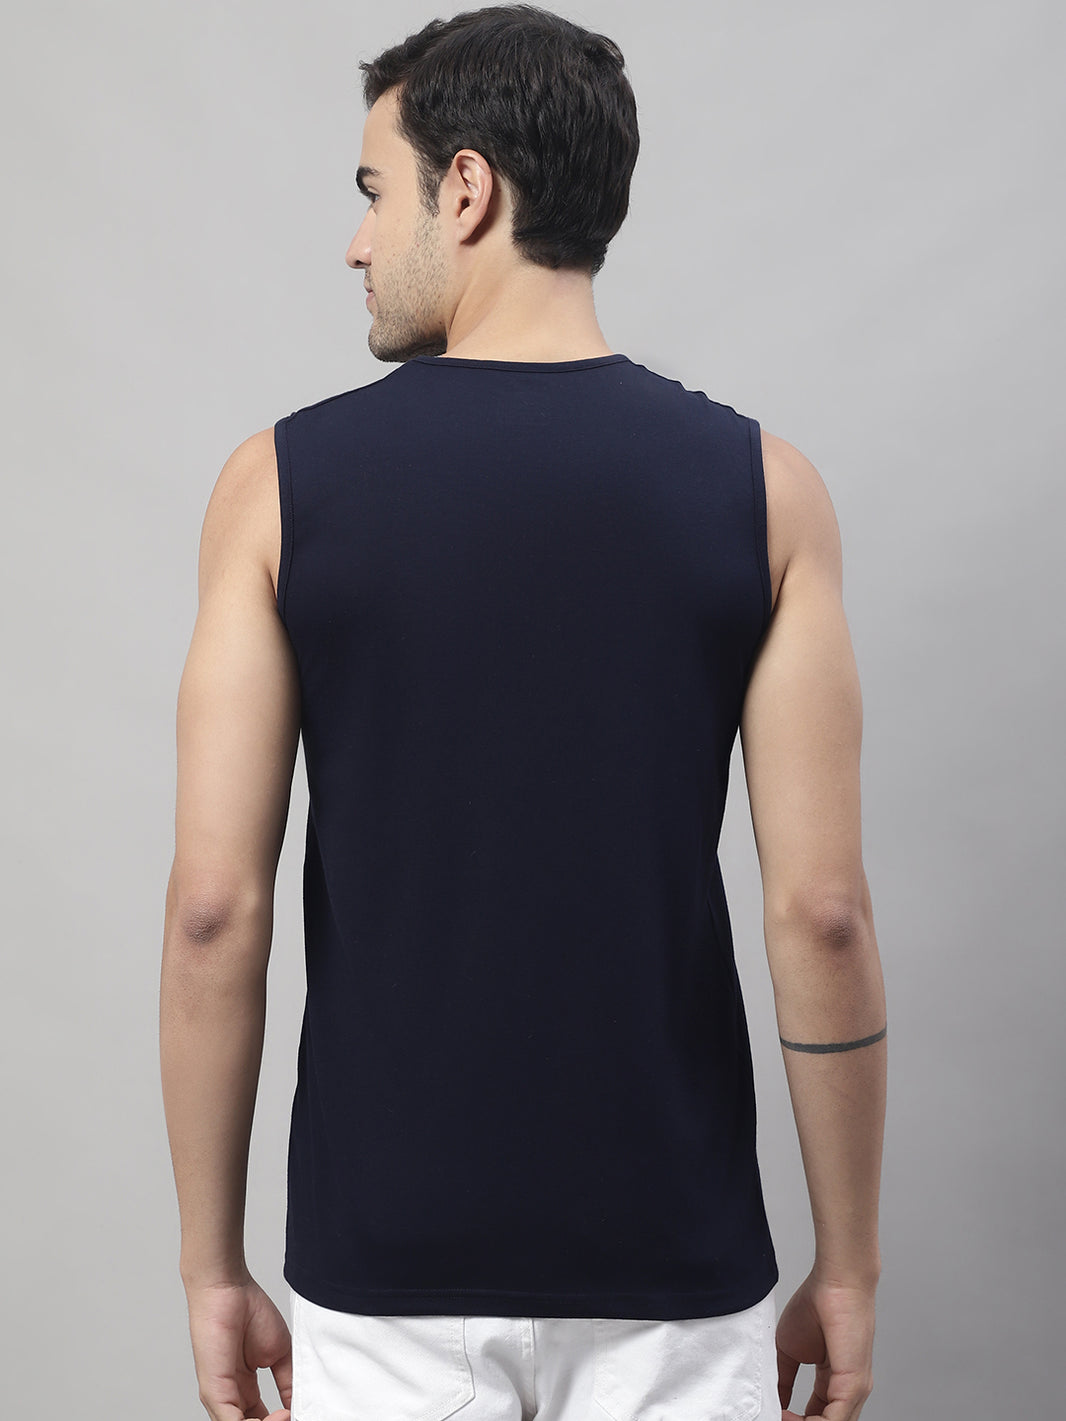 Vimal Jonney Regular Fit Cotton Solid Navy Blue Gym Vest for Men